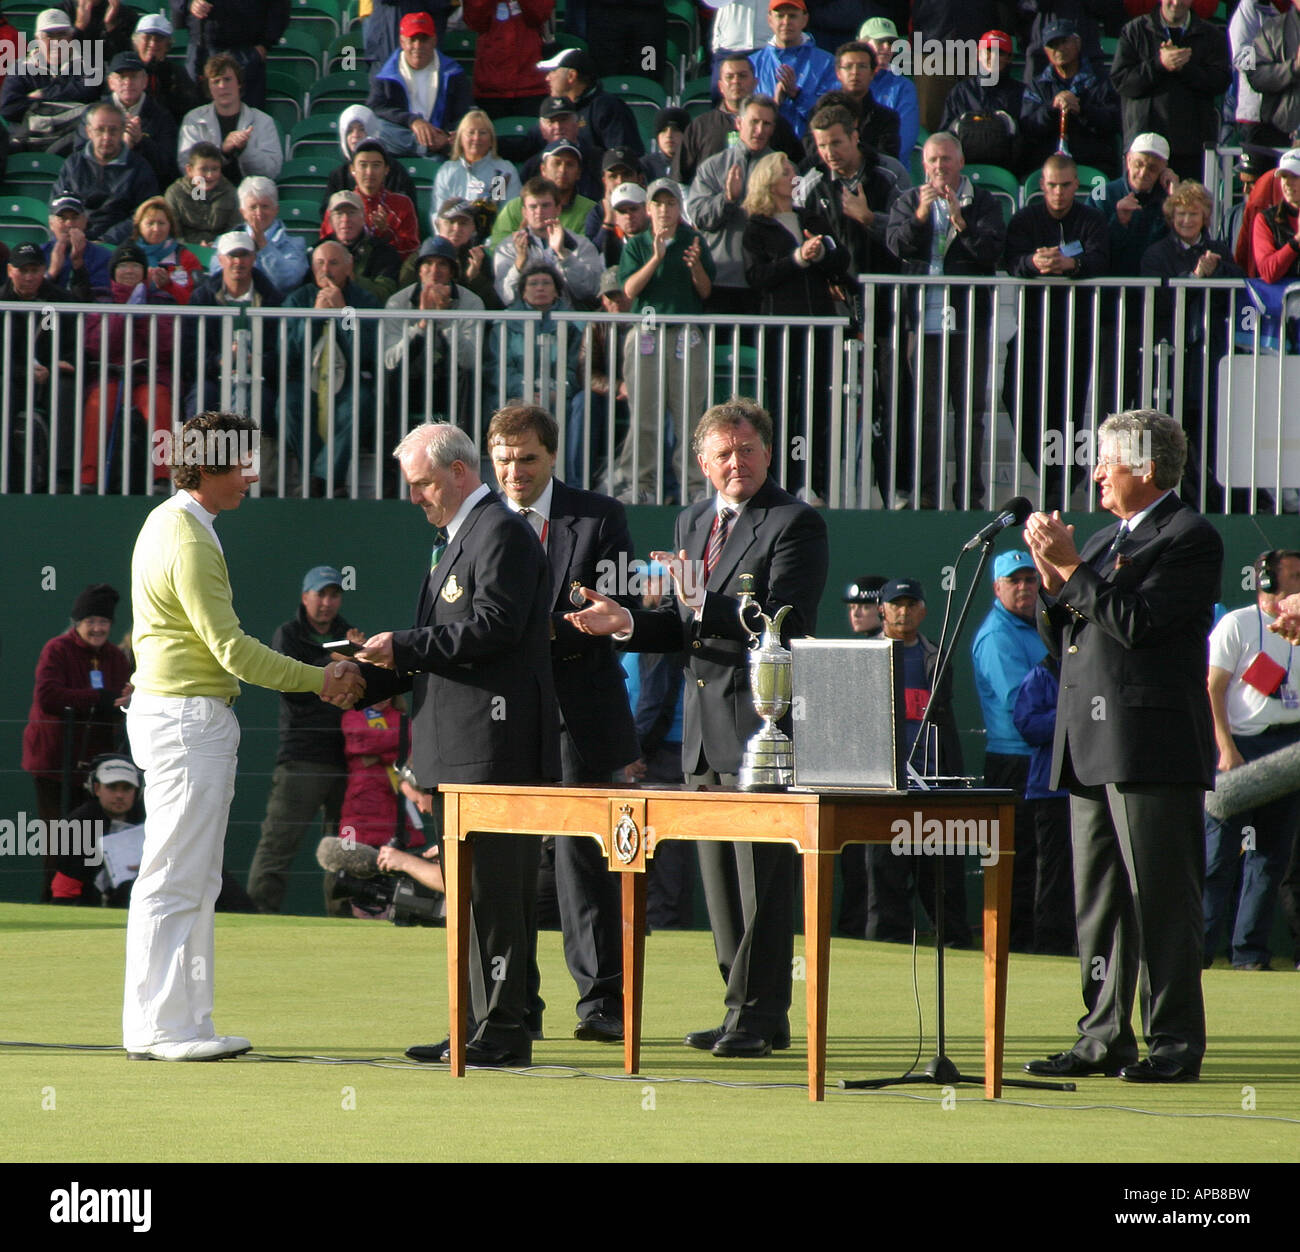 18 jährige Rory McIlroy führt Amateur bei der Open Golf Championship 2007 Carnoustie Schottlands, die Silber-Medaille zu gewinnen Stockfoto